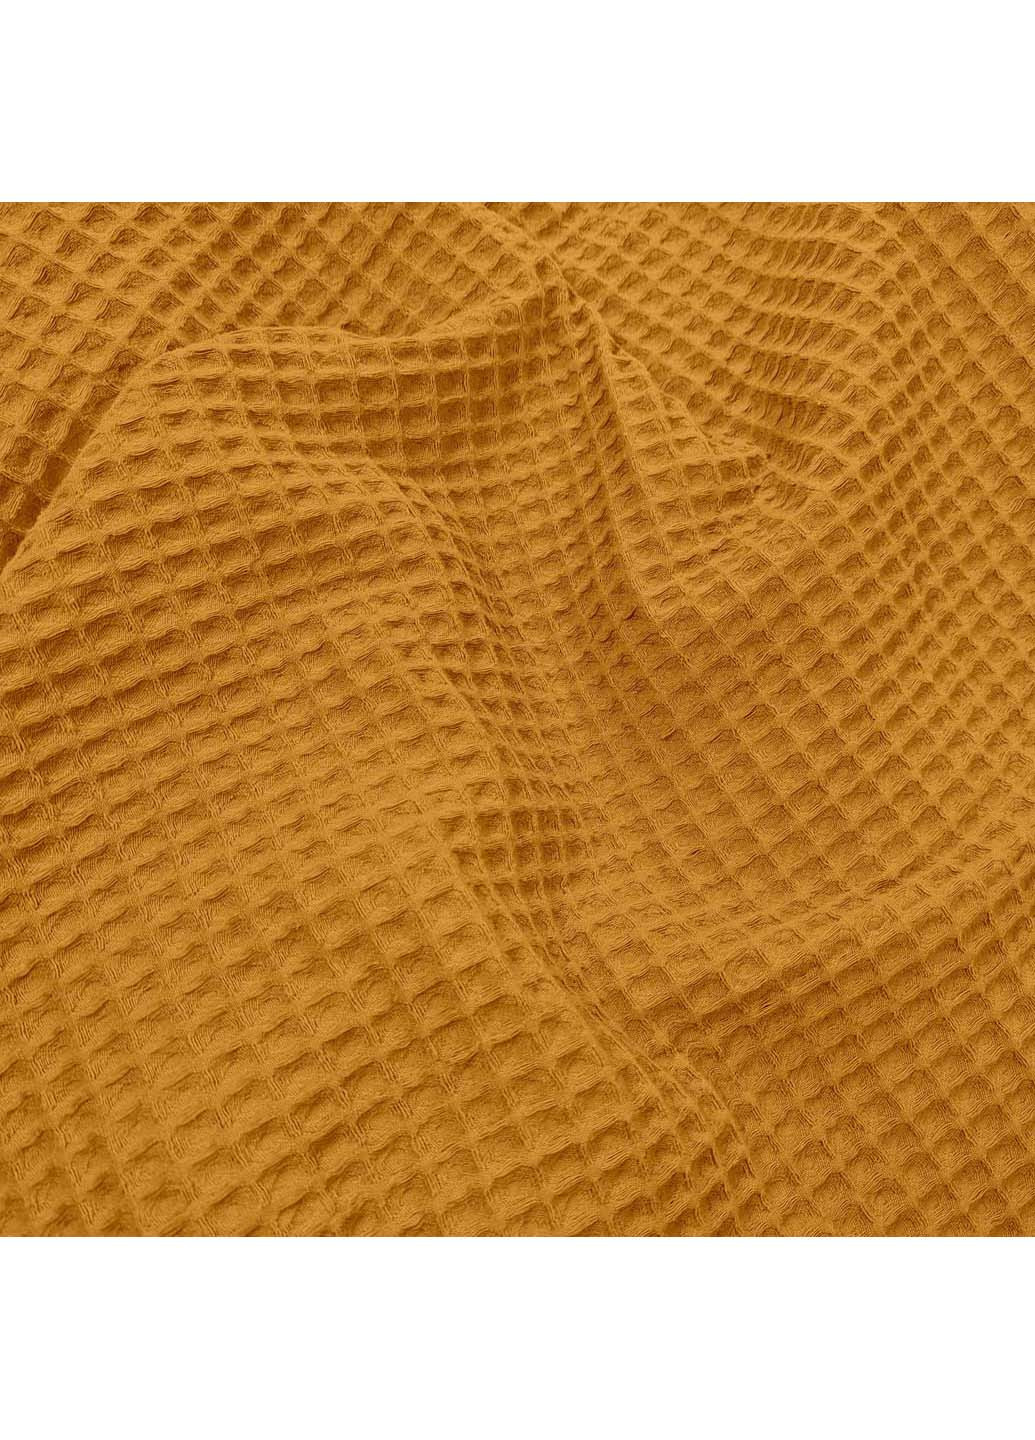 Cosas полотенце greek waffle 115x150 см золотой производство -